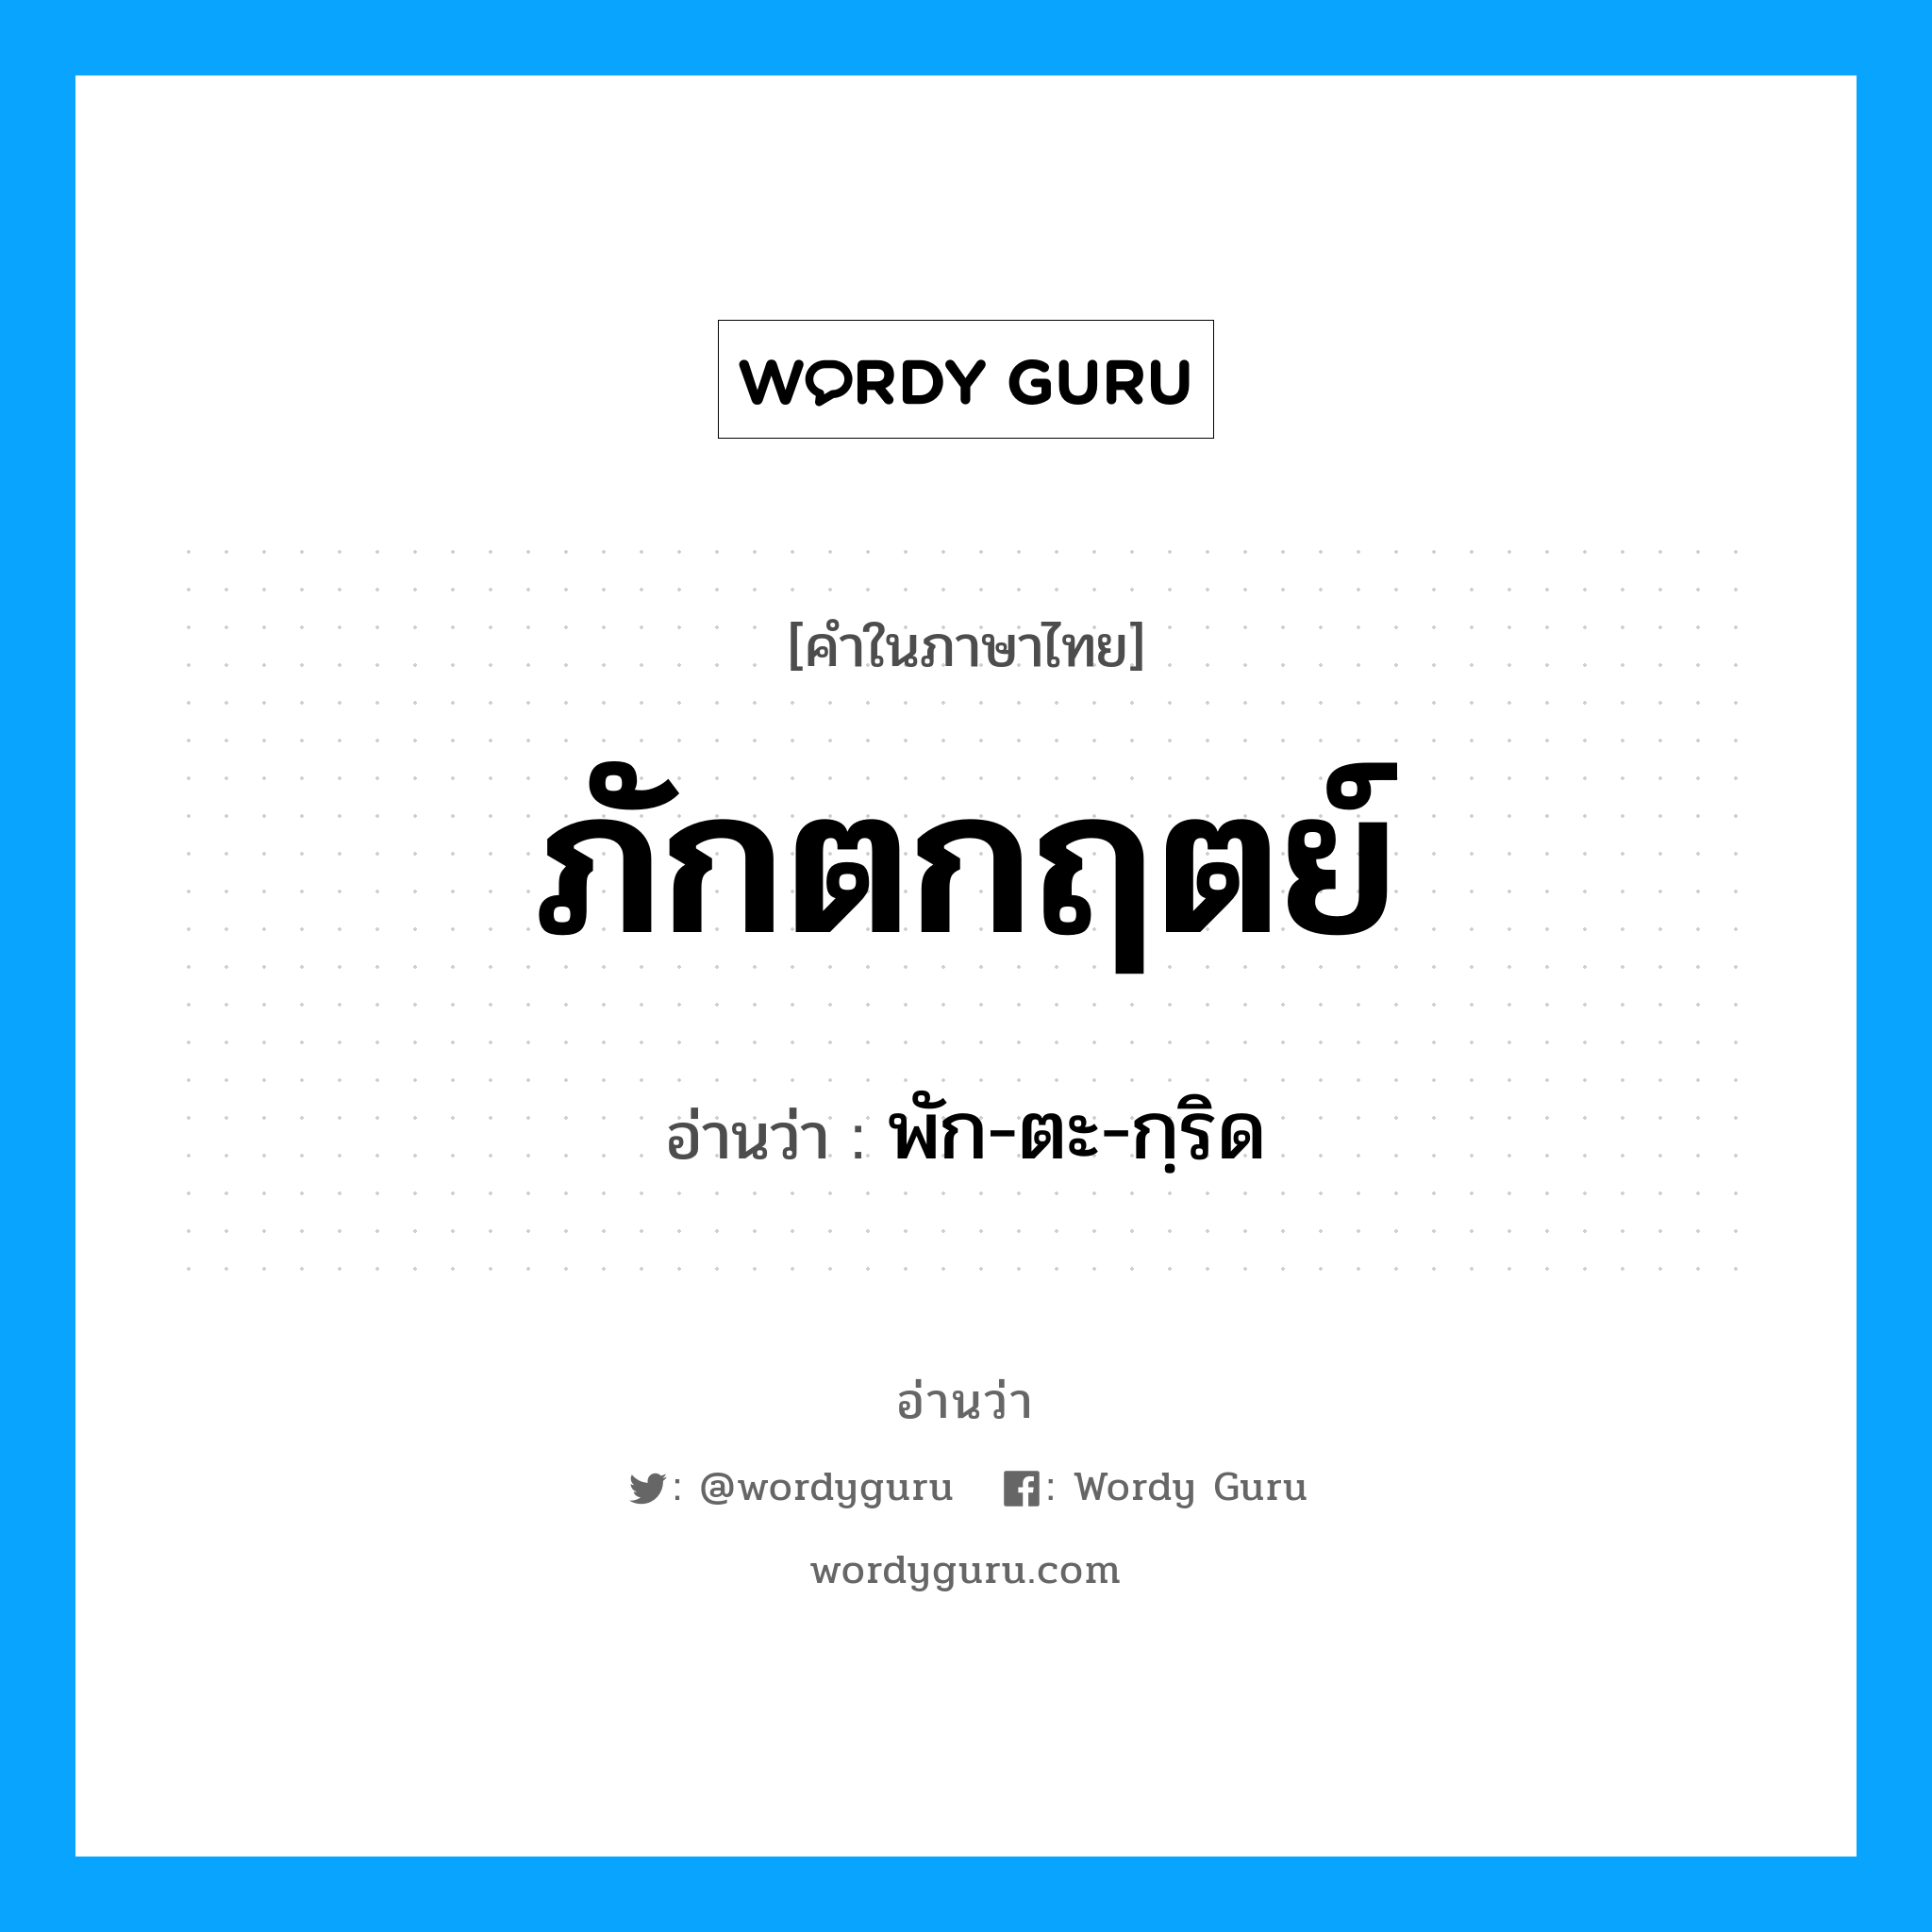 พัก-ตะ-กฺริด เป็นคำอ่านของคำไหน?, คำในภาษาไทย พัก-ตะ-กฺริด อ่านว่า ภักตกฤตย์